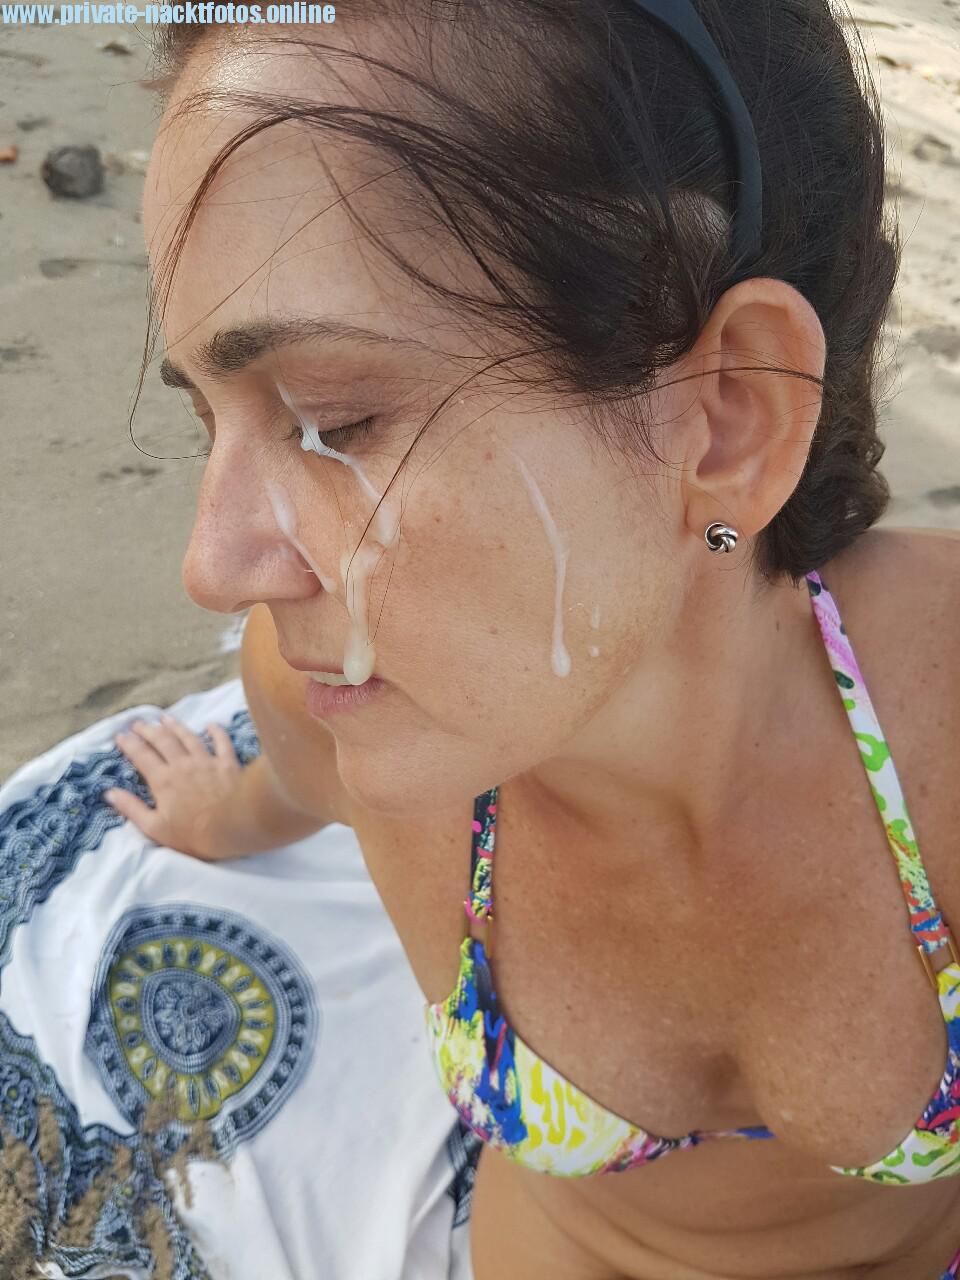 Am Strand Sperma Im Gesicht